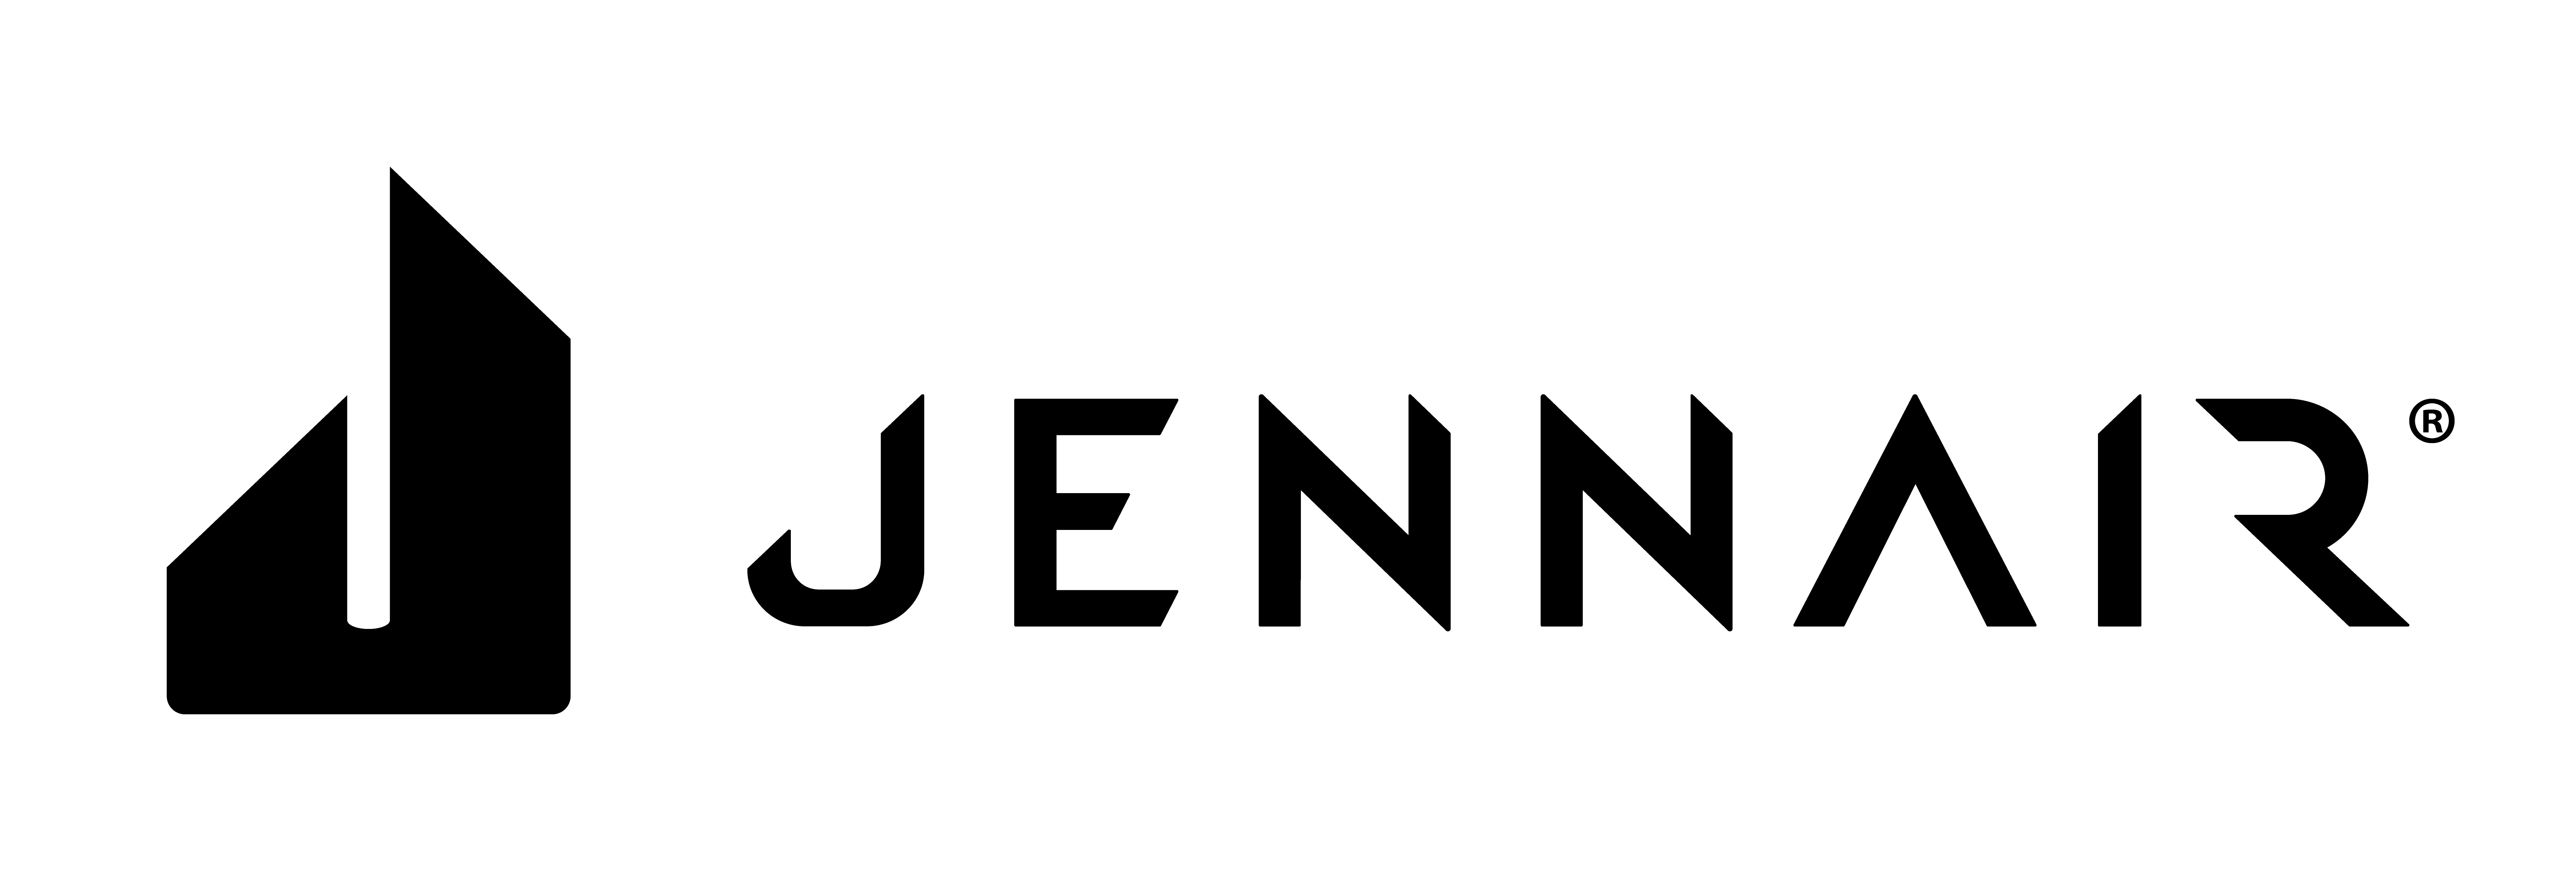 JennAir Logo